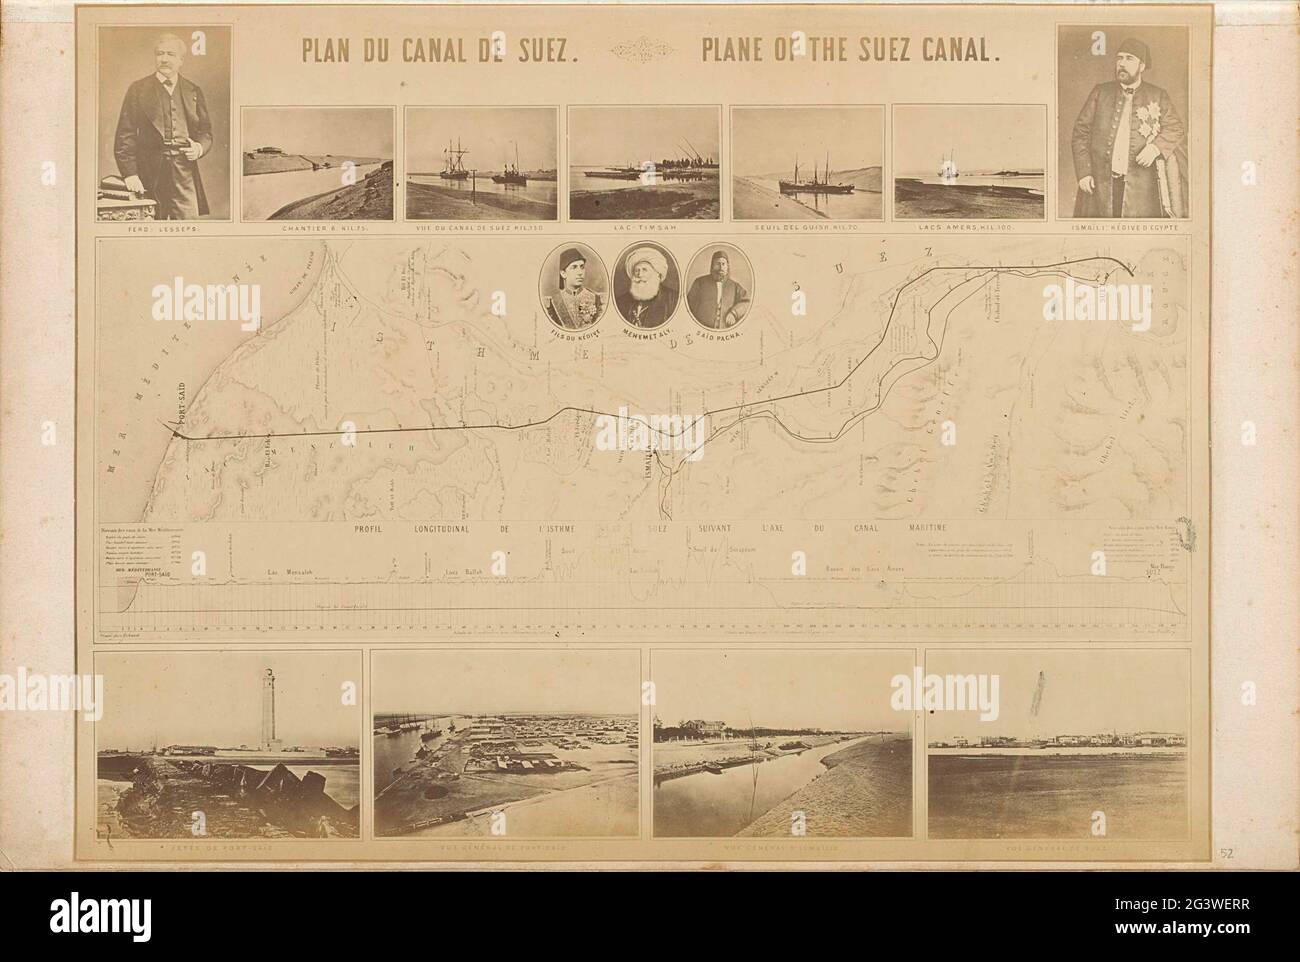 Fotoproduktion einer Karte mit dem Bereich des Suezkanals, Fotos der Orte Ergangs und Van Ismael Pasha und Ferdinand De Lesseps. Teil des Fotoalbums von Robert Daniel Crommelin (1841-1907). Stockfoto